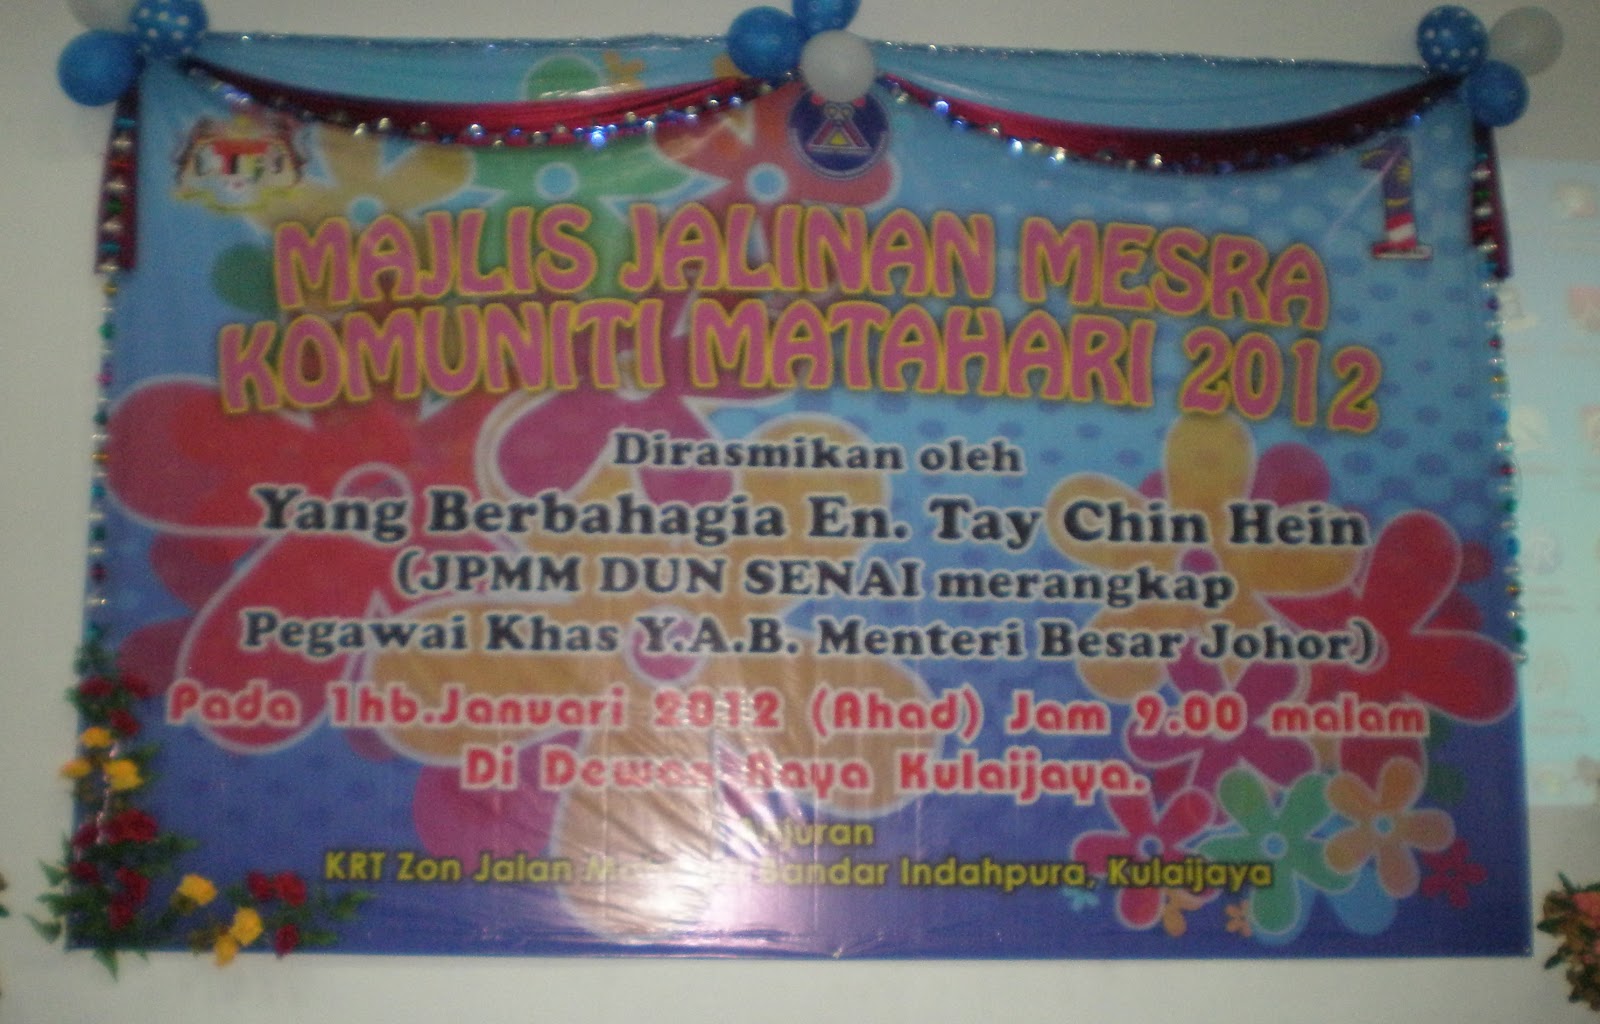 *: Majlis Jalinan Mesra Komuniti Matahari Tahun 2012: KRT 